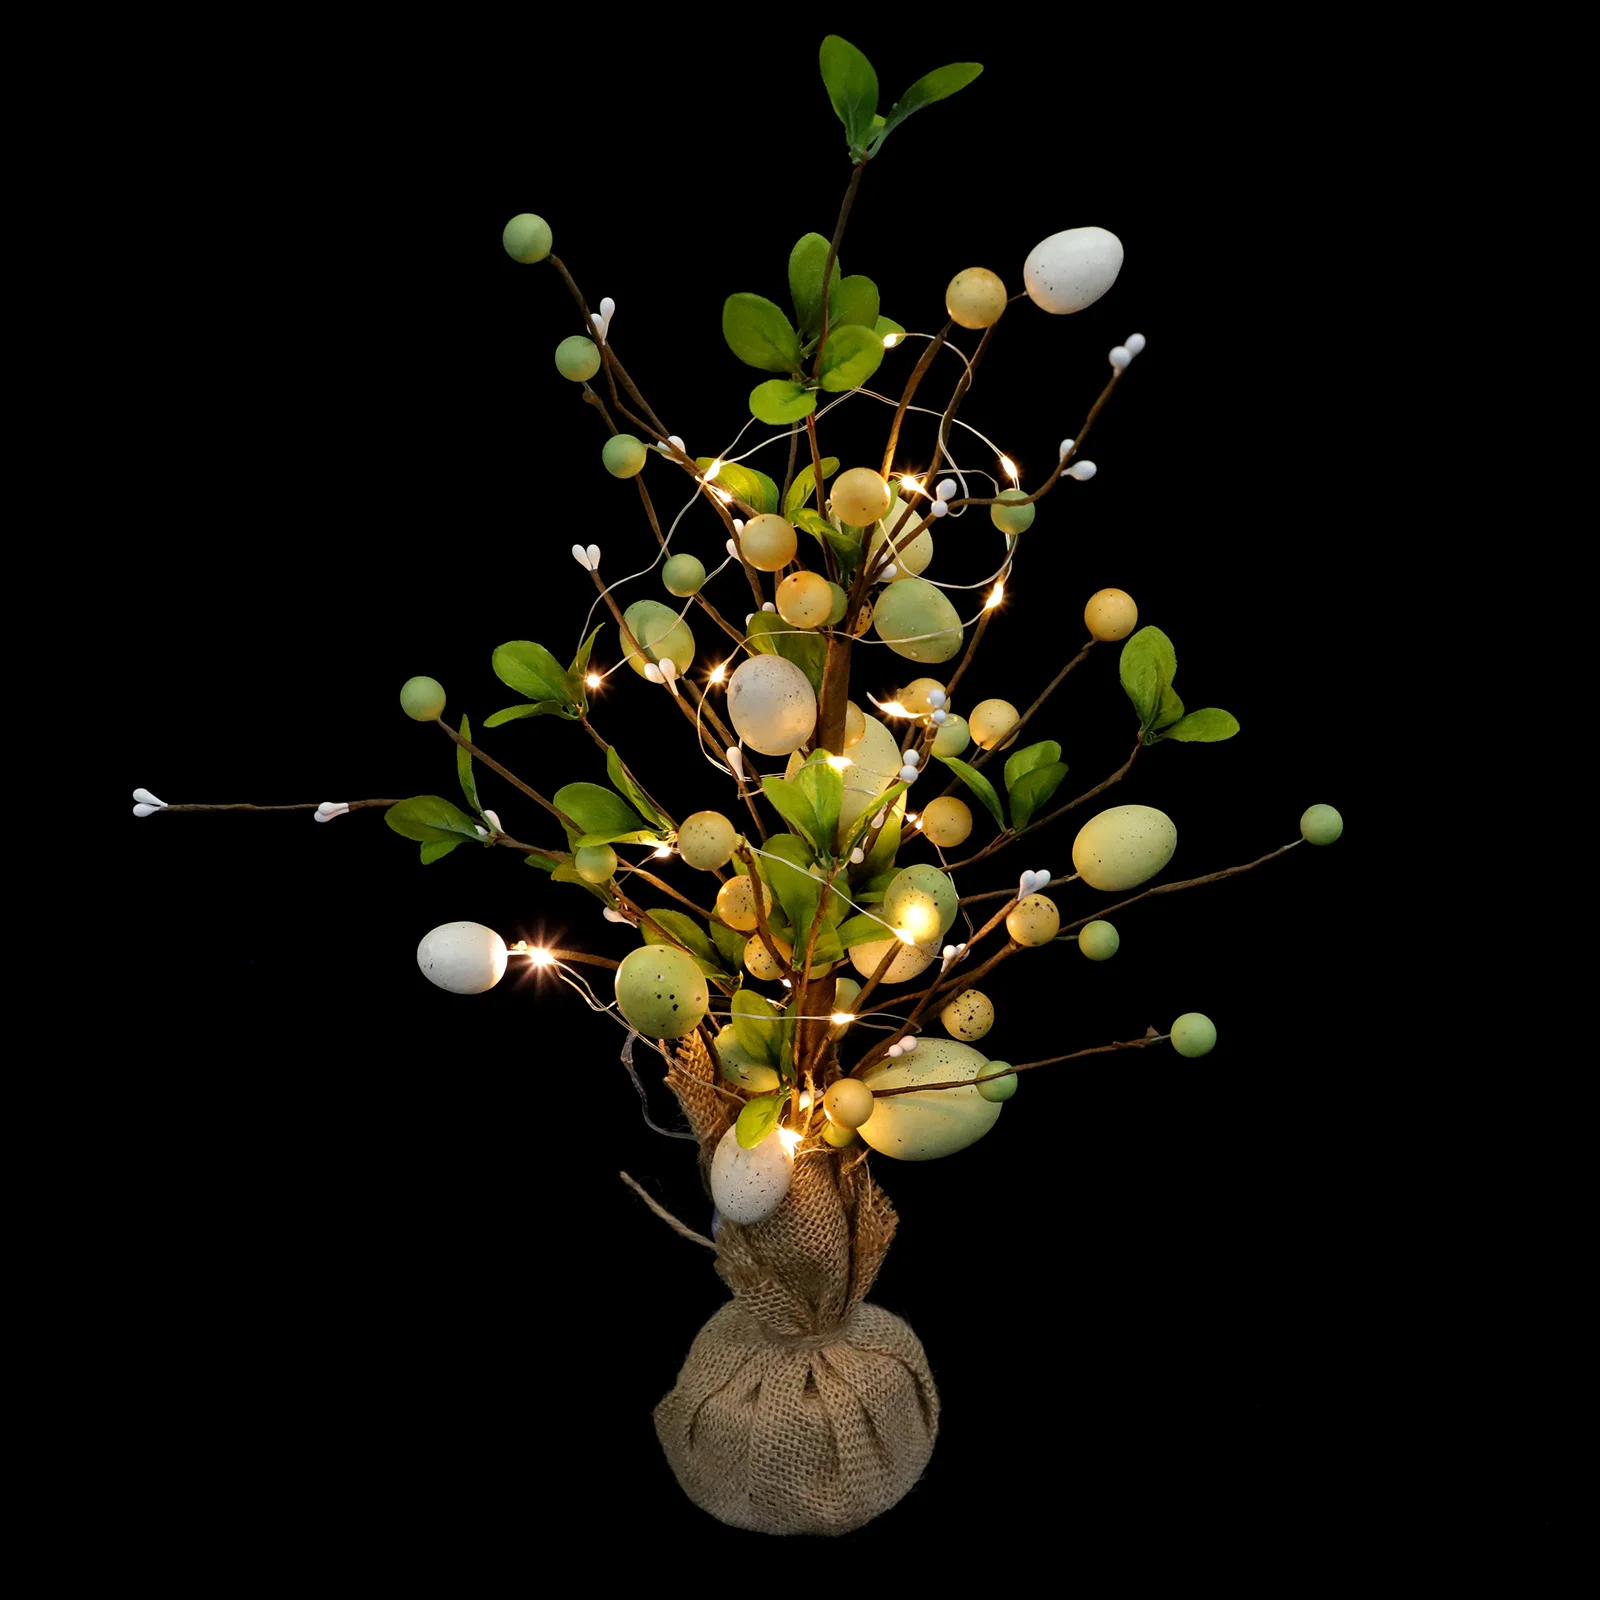 

Пасхальное яйцо, светодиодное украшение в виде ветки дерева, искусственные яйца, ветка, реалистичное украшение в виде яйца